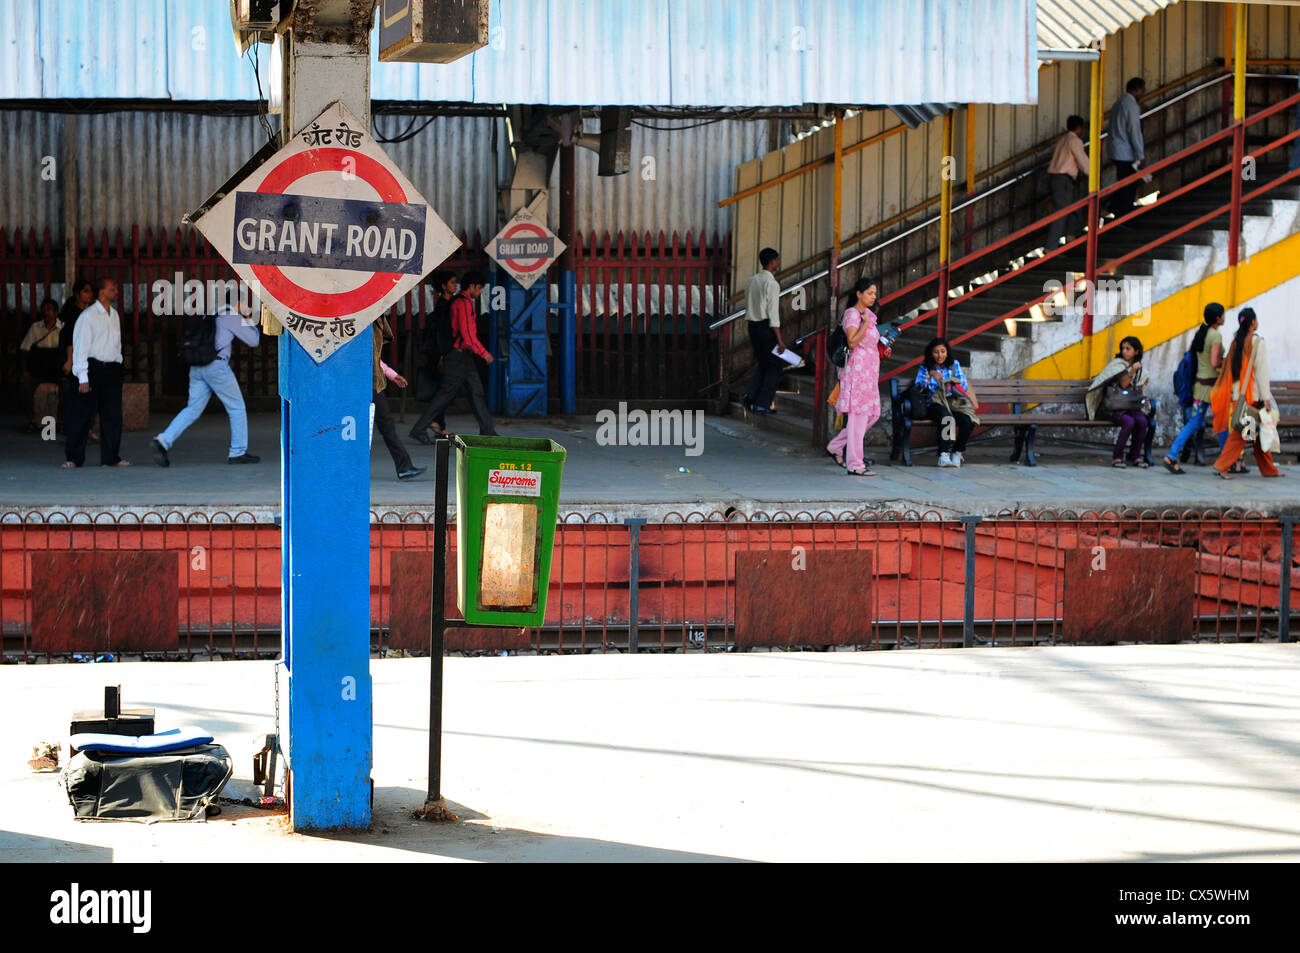 La gare de Grant Road, Mumbai, Inde Banque D'Images